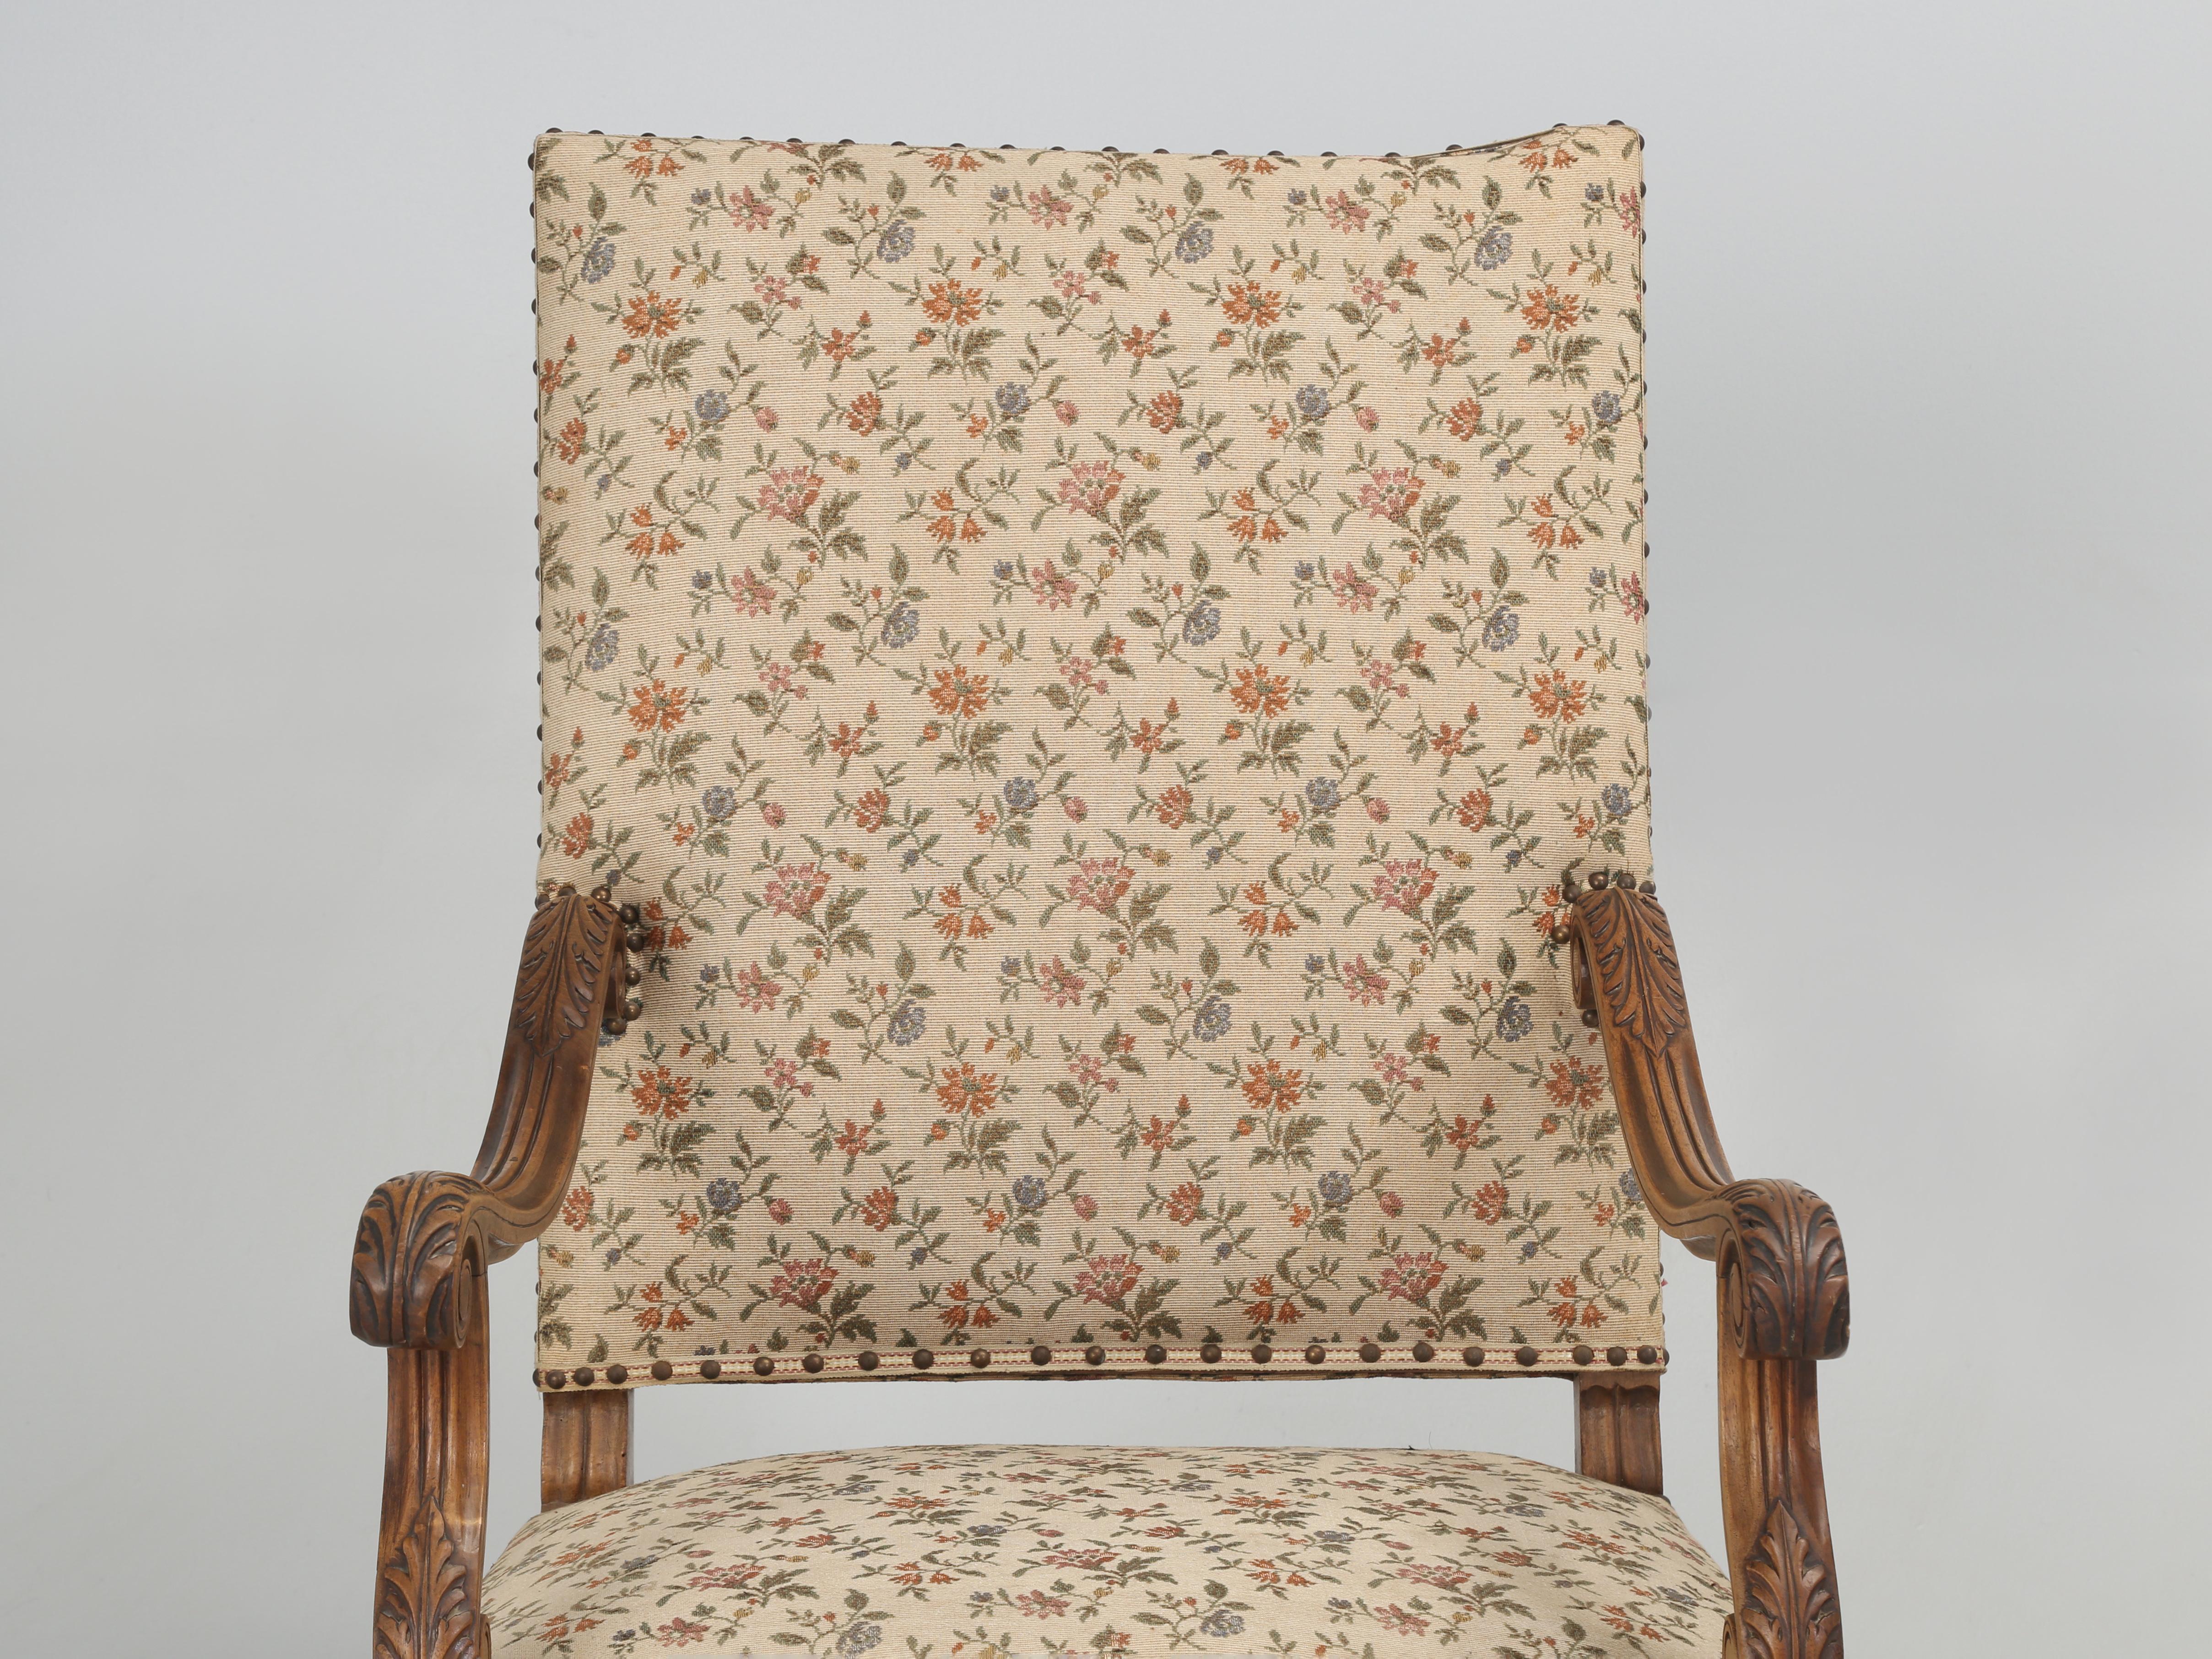 Fauteuil français ancien ou chaise de trône française ancienne qui a été sculptée à la main dans du noyer probablement à la fin des années 1800 et qui a grand besoin d'une visite dans votre atelier de tapisserie d'ameublement préféré. Le cadre de la